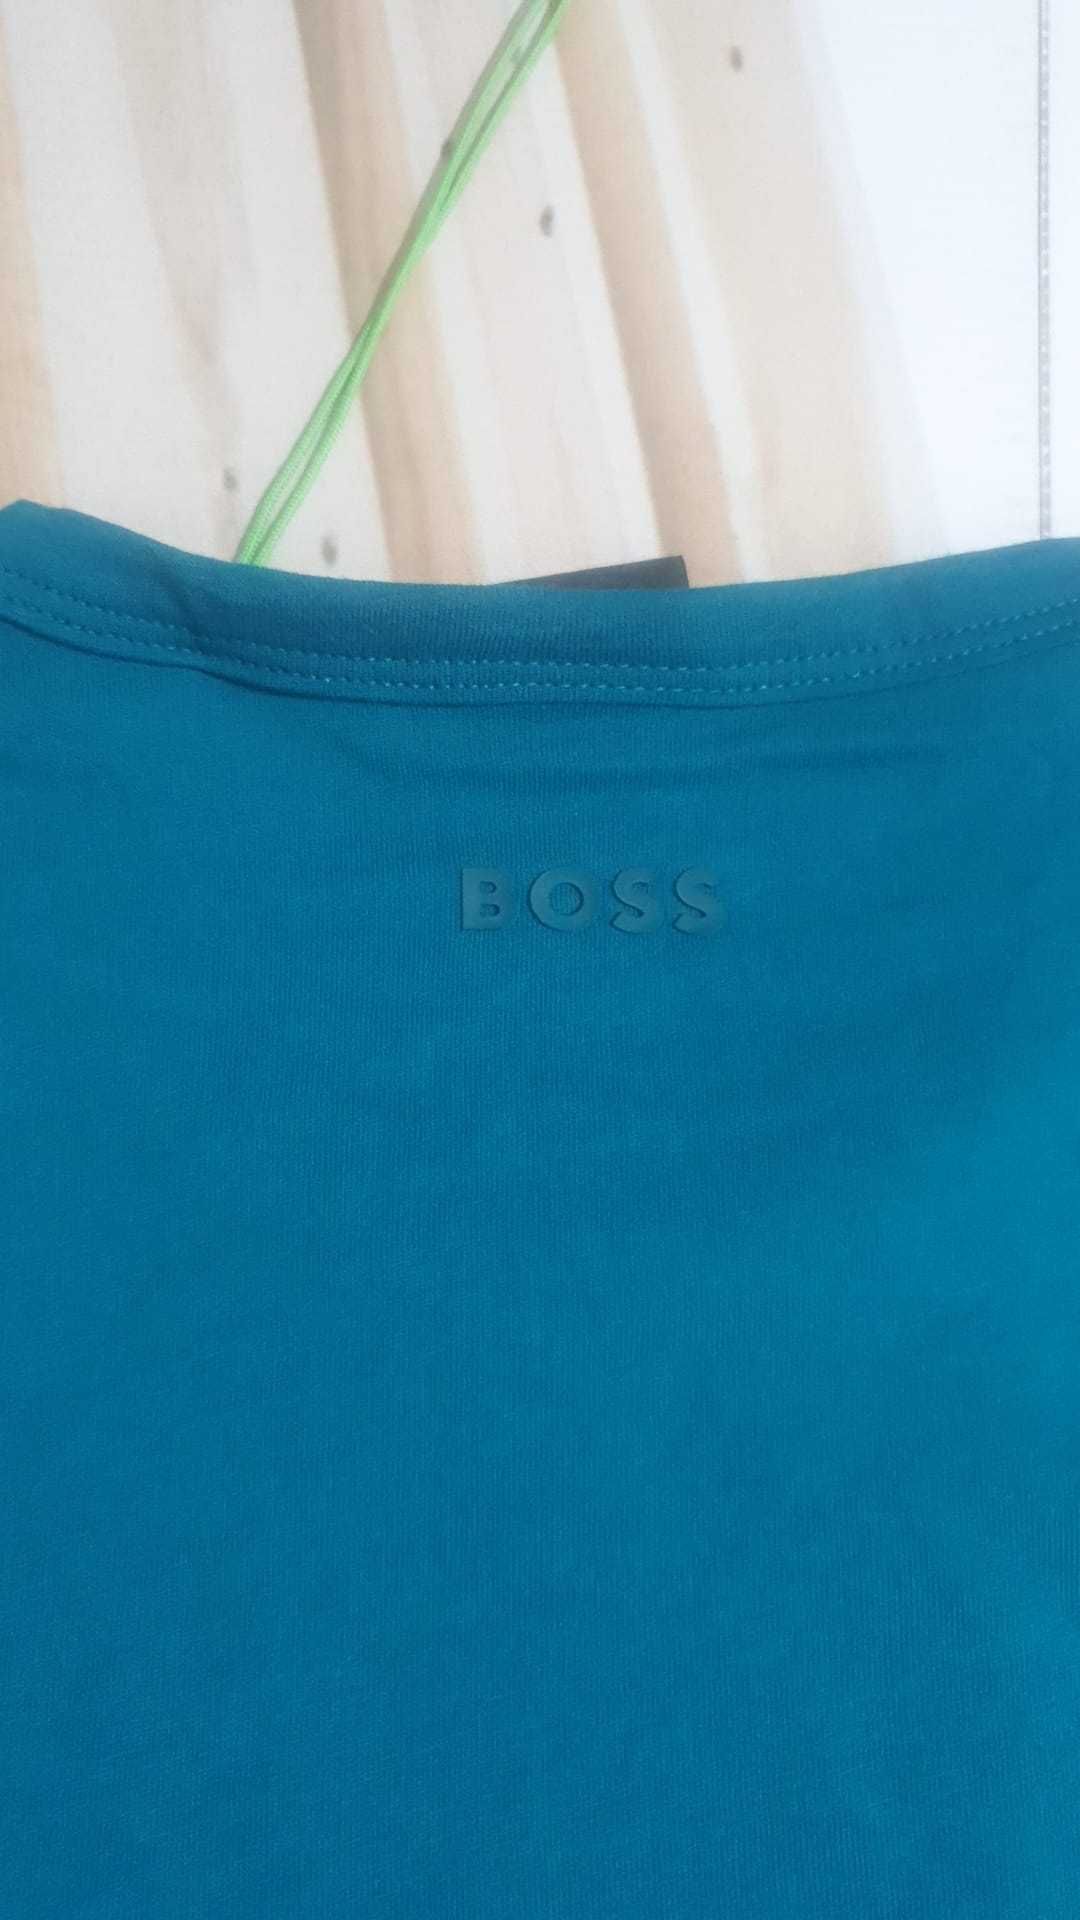 Vand tricou barbati Hugo Boss masura S si M original nou cu eticheta.